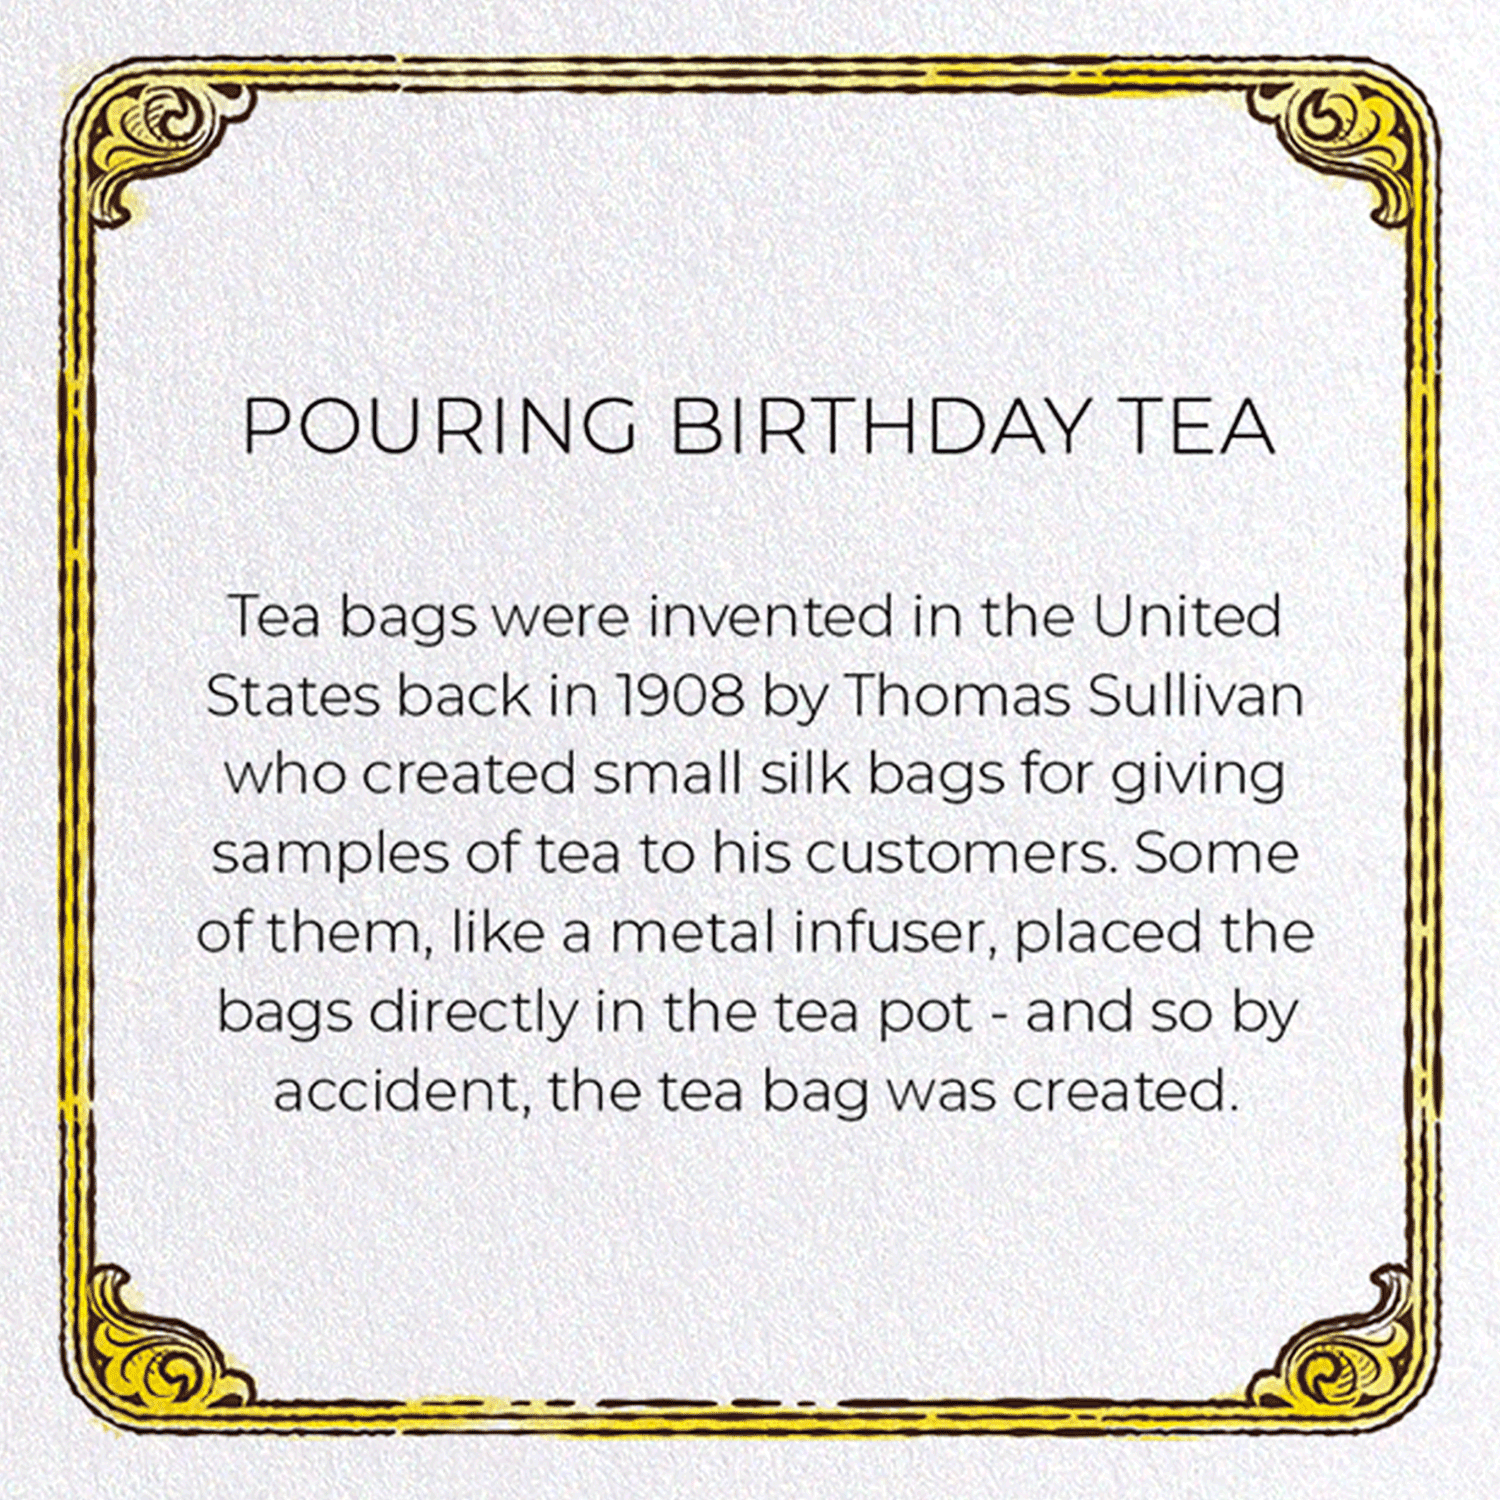 POURING BIRTHDAY TEA